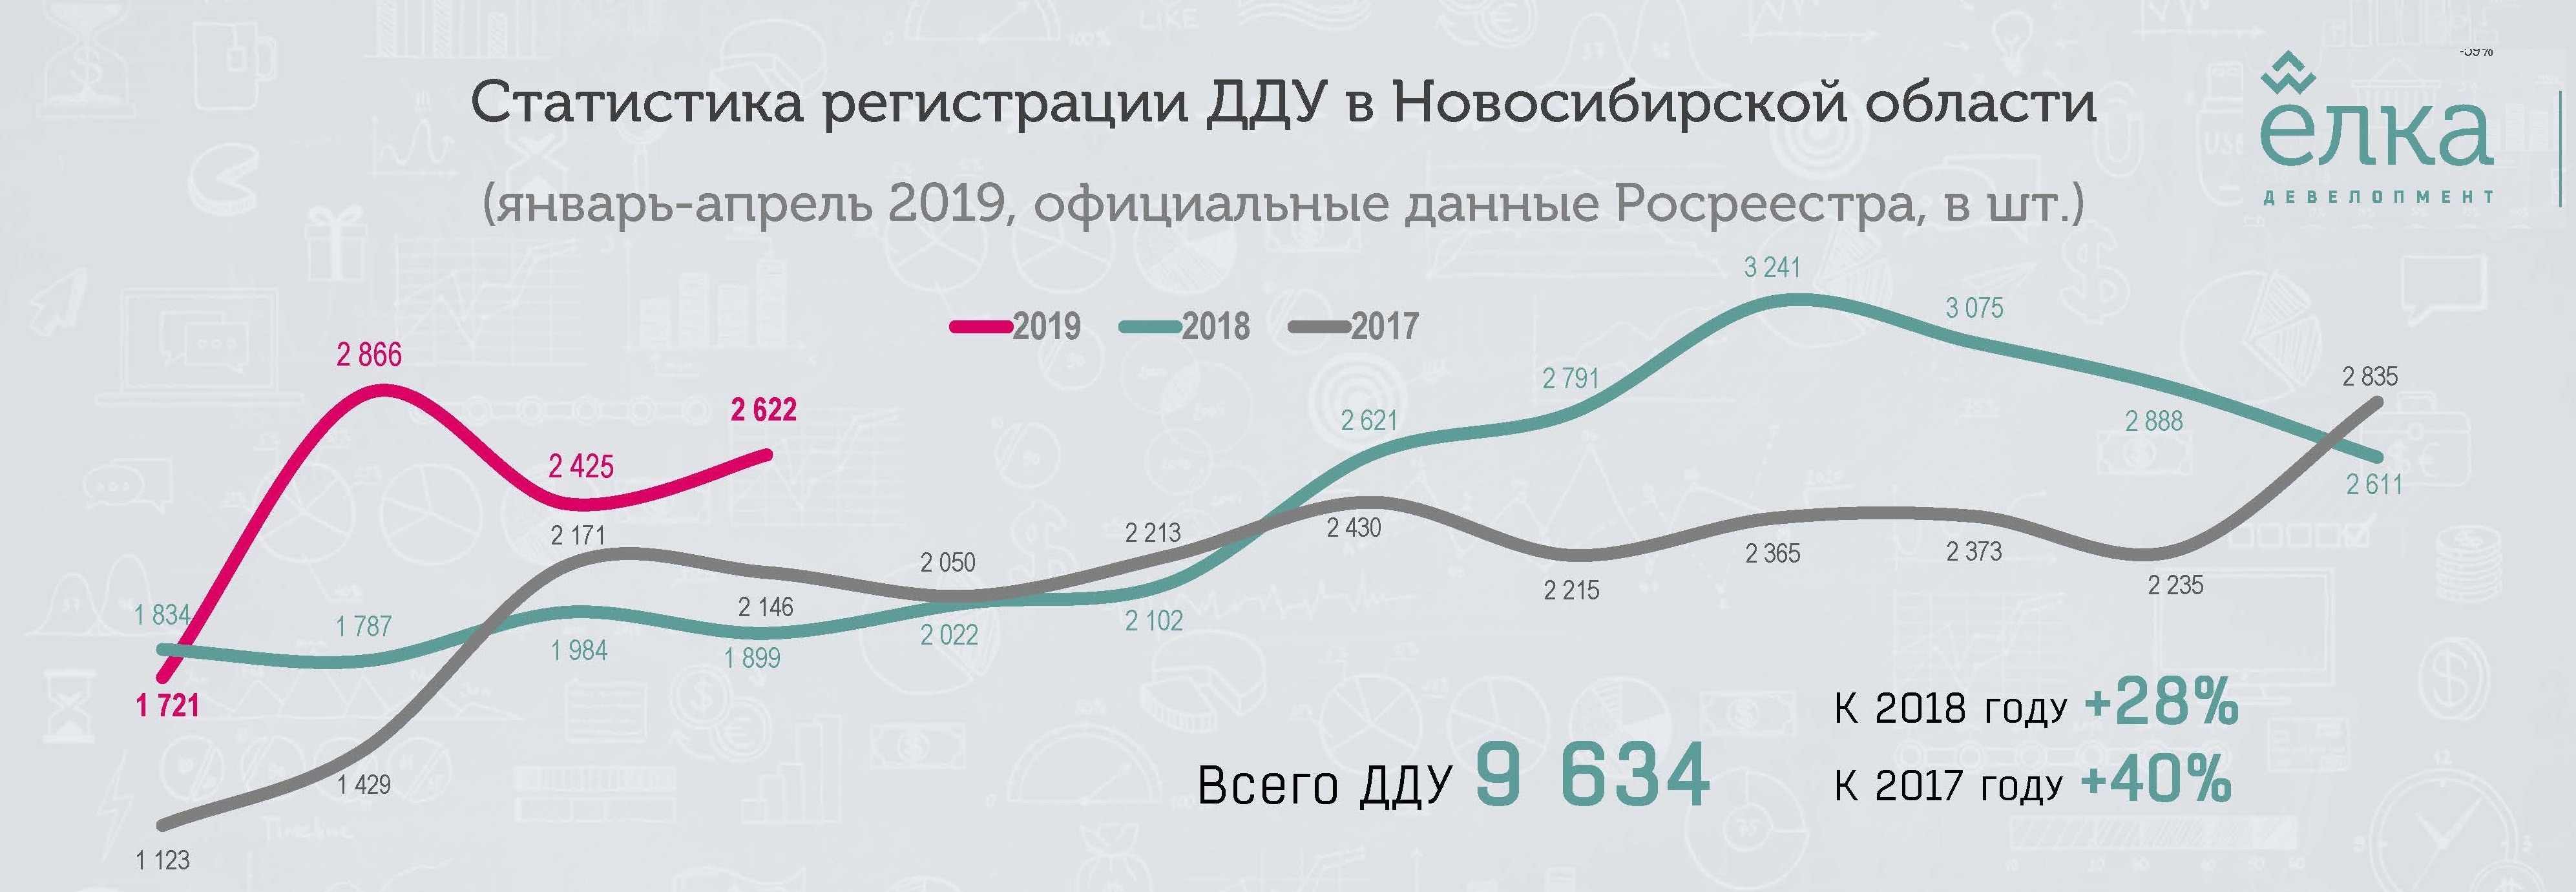 В Новосибирске — взрывной рост регистраций договоров долевого участия